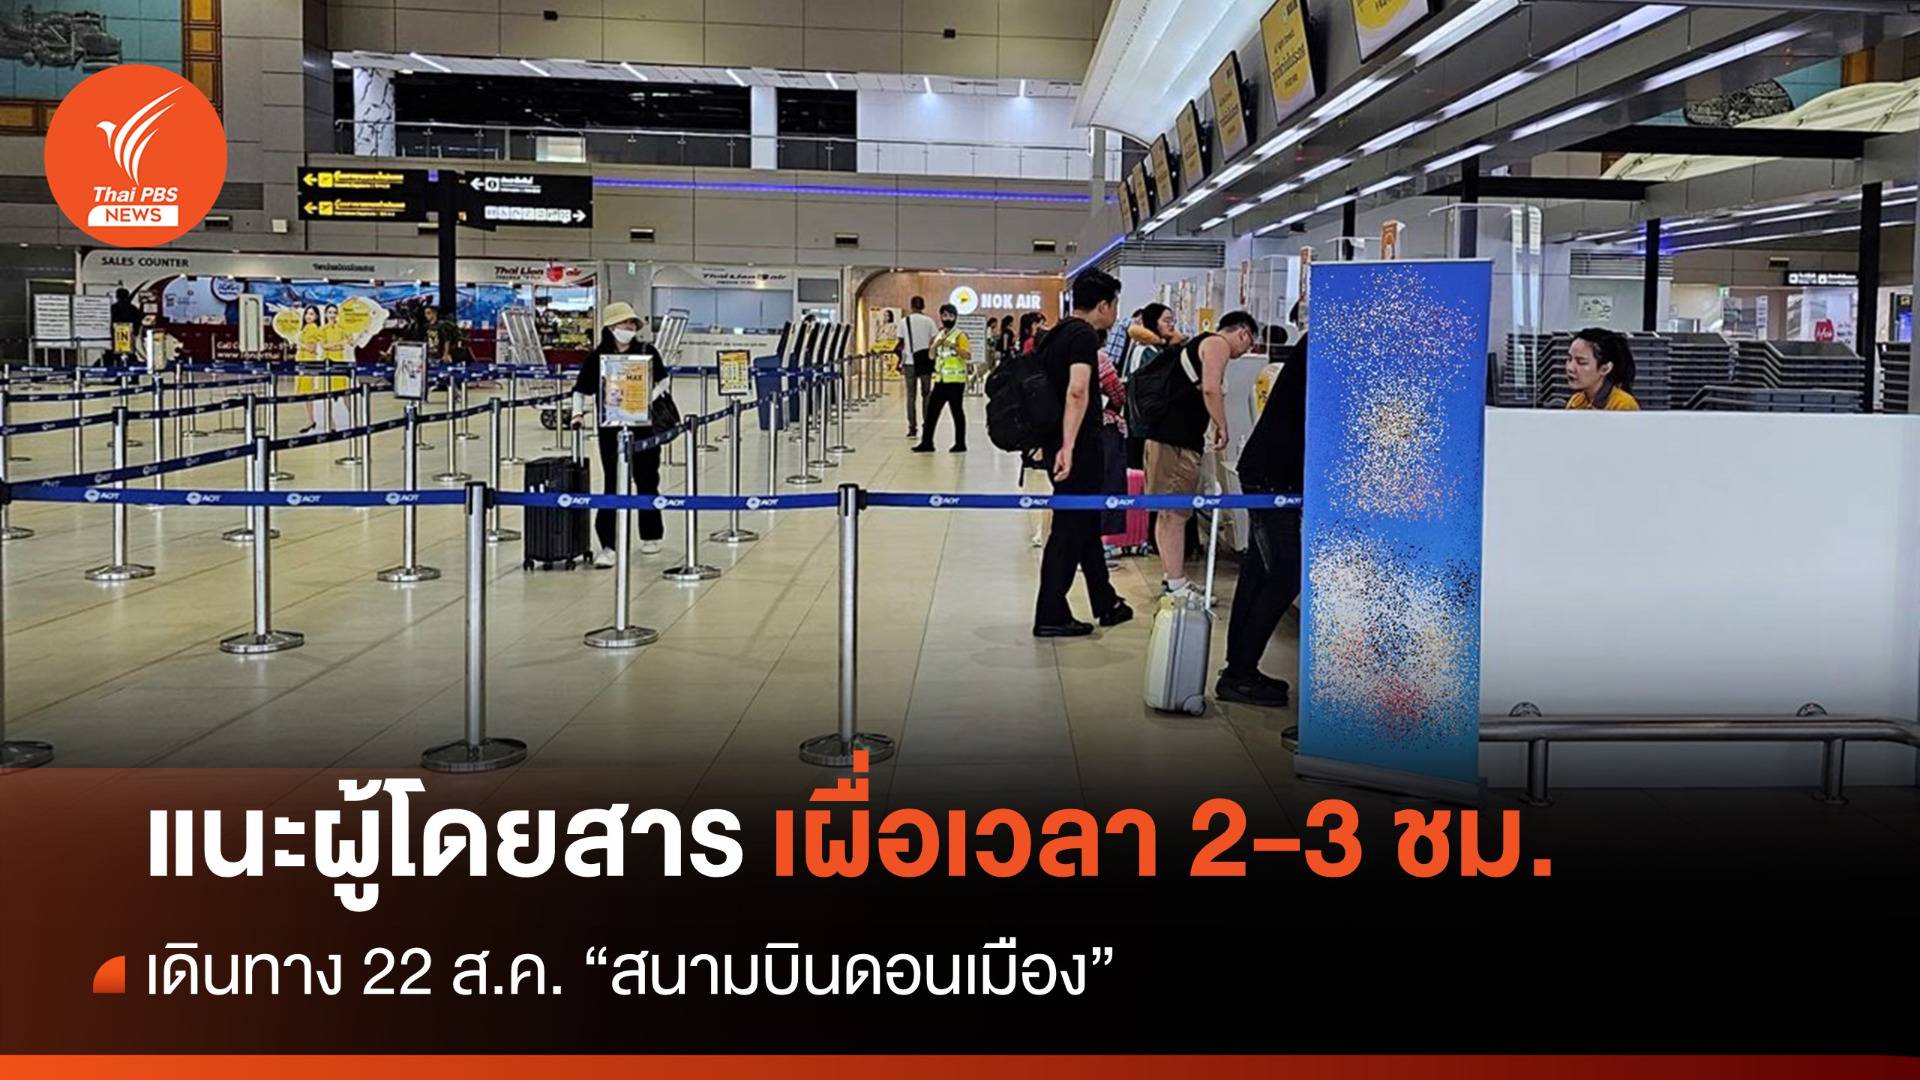 ทักษิณกลับไทย  : ผู้โดยสารโปรดทราบ "สนามบินดอนเมือง" แนะเผื่อเวลาเดินทาง